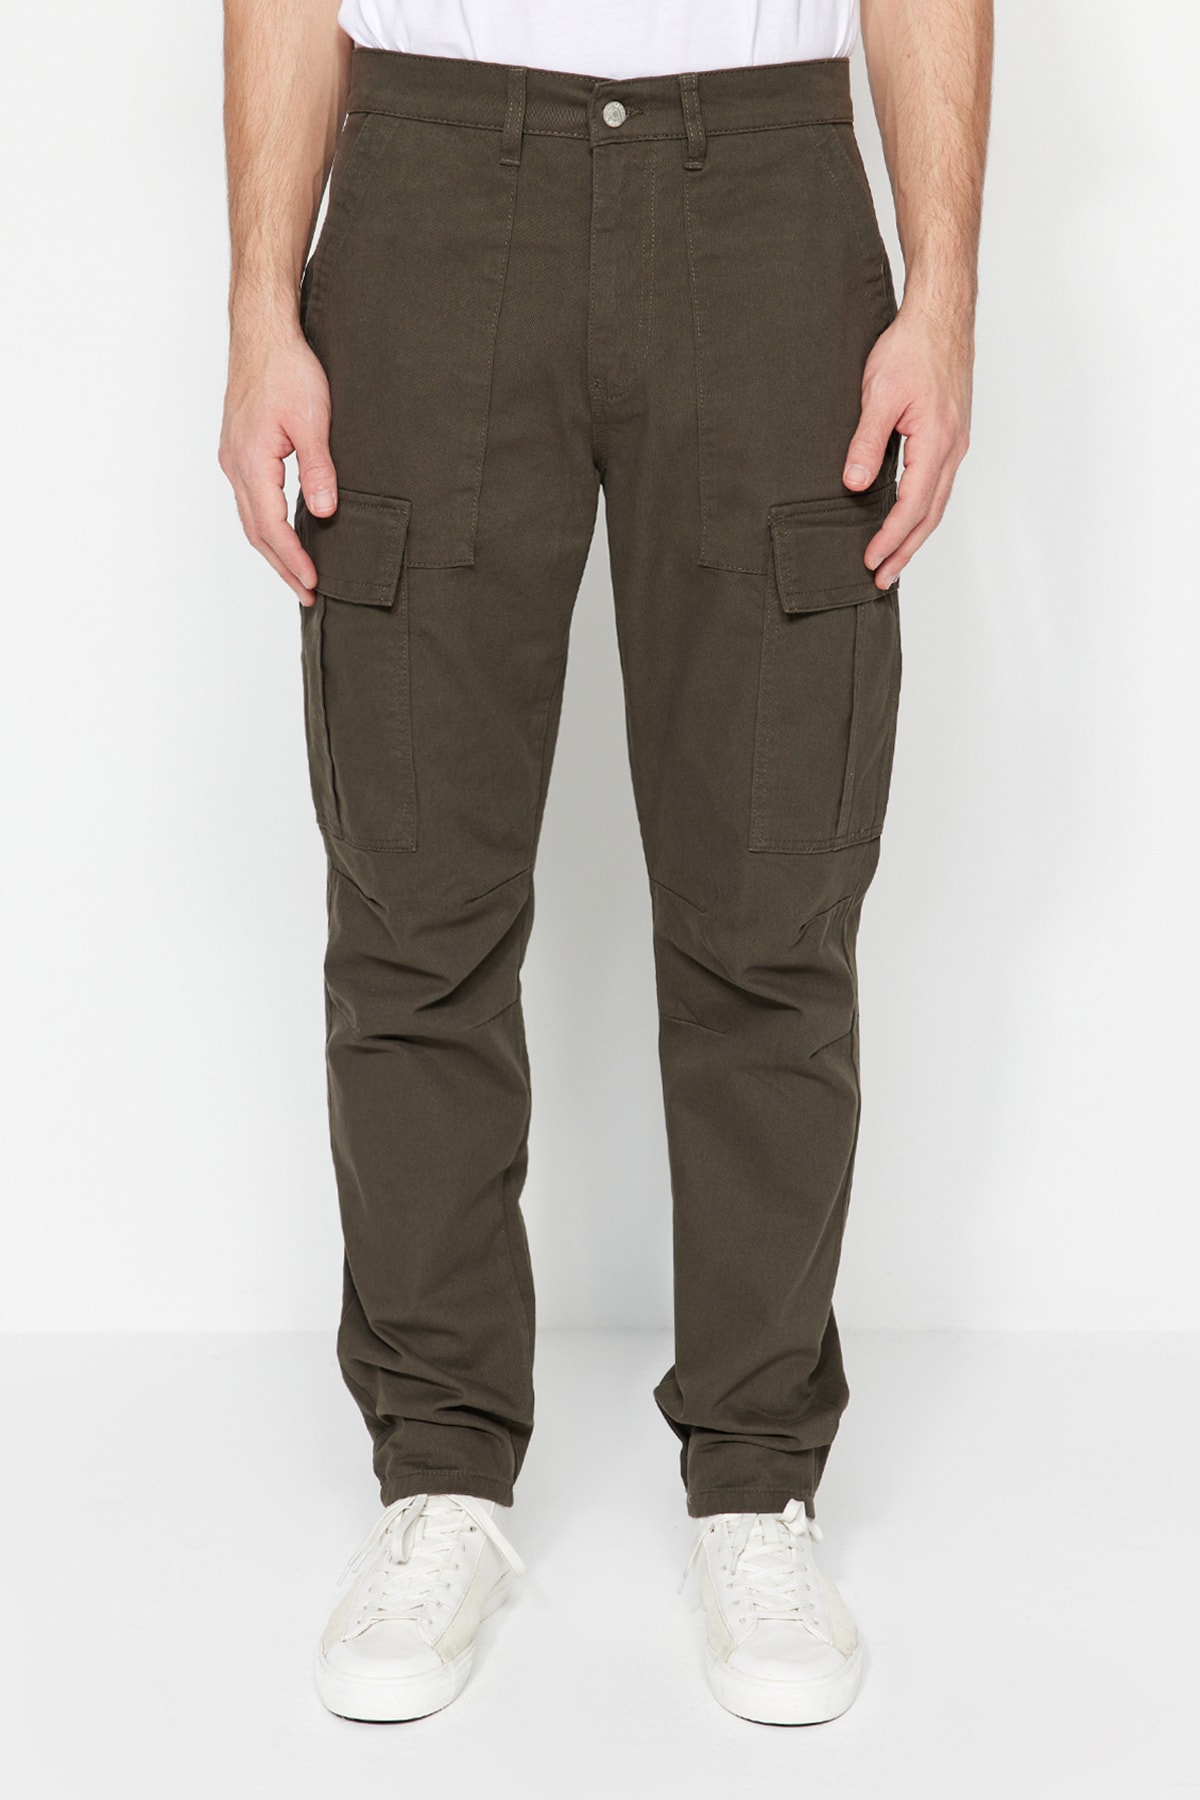 Брюки Trendyol карго, темно-зеленый брюки карго размер 50 зеленый коричневый